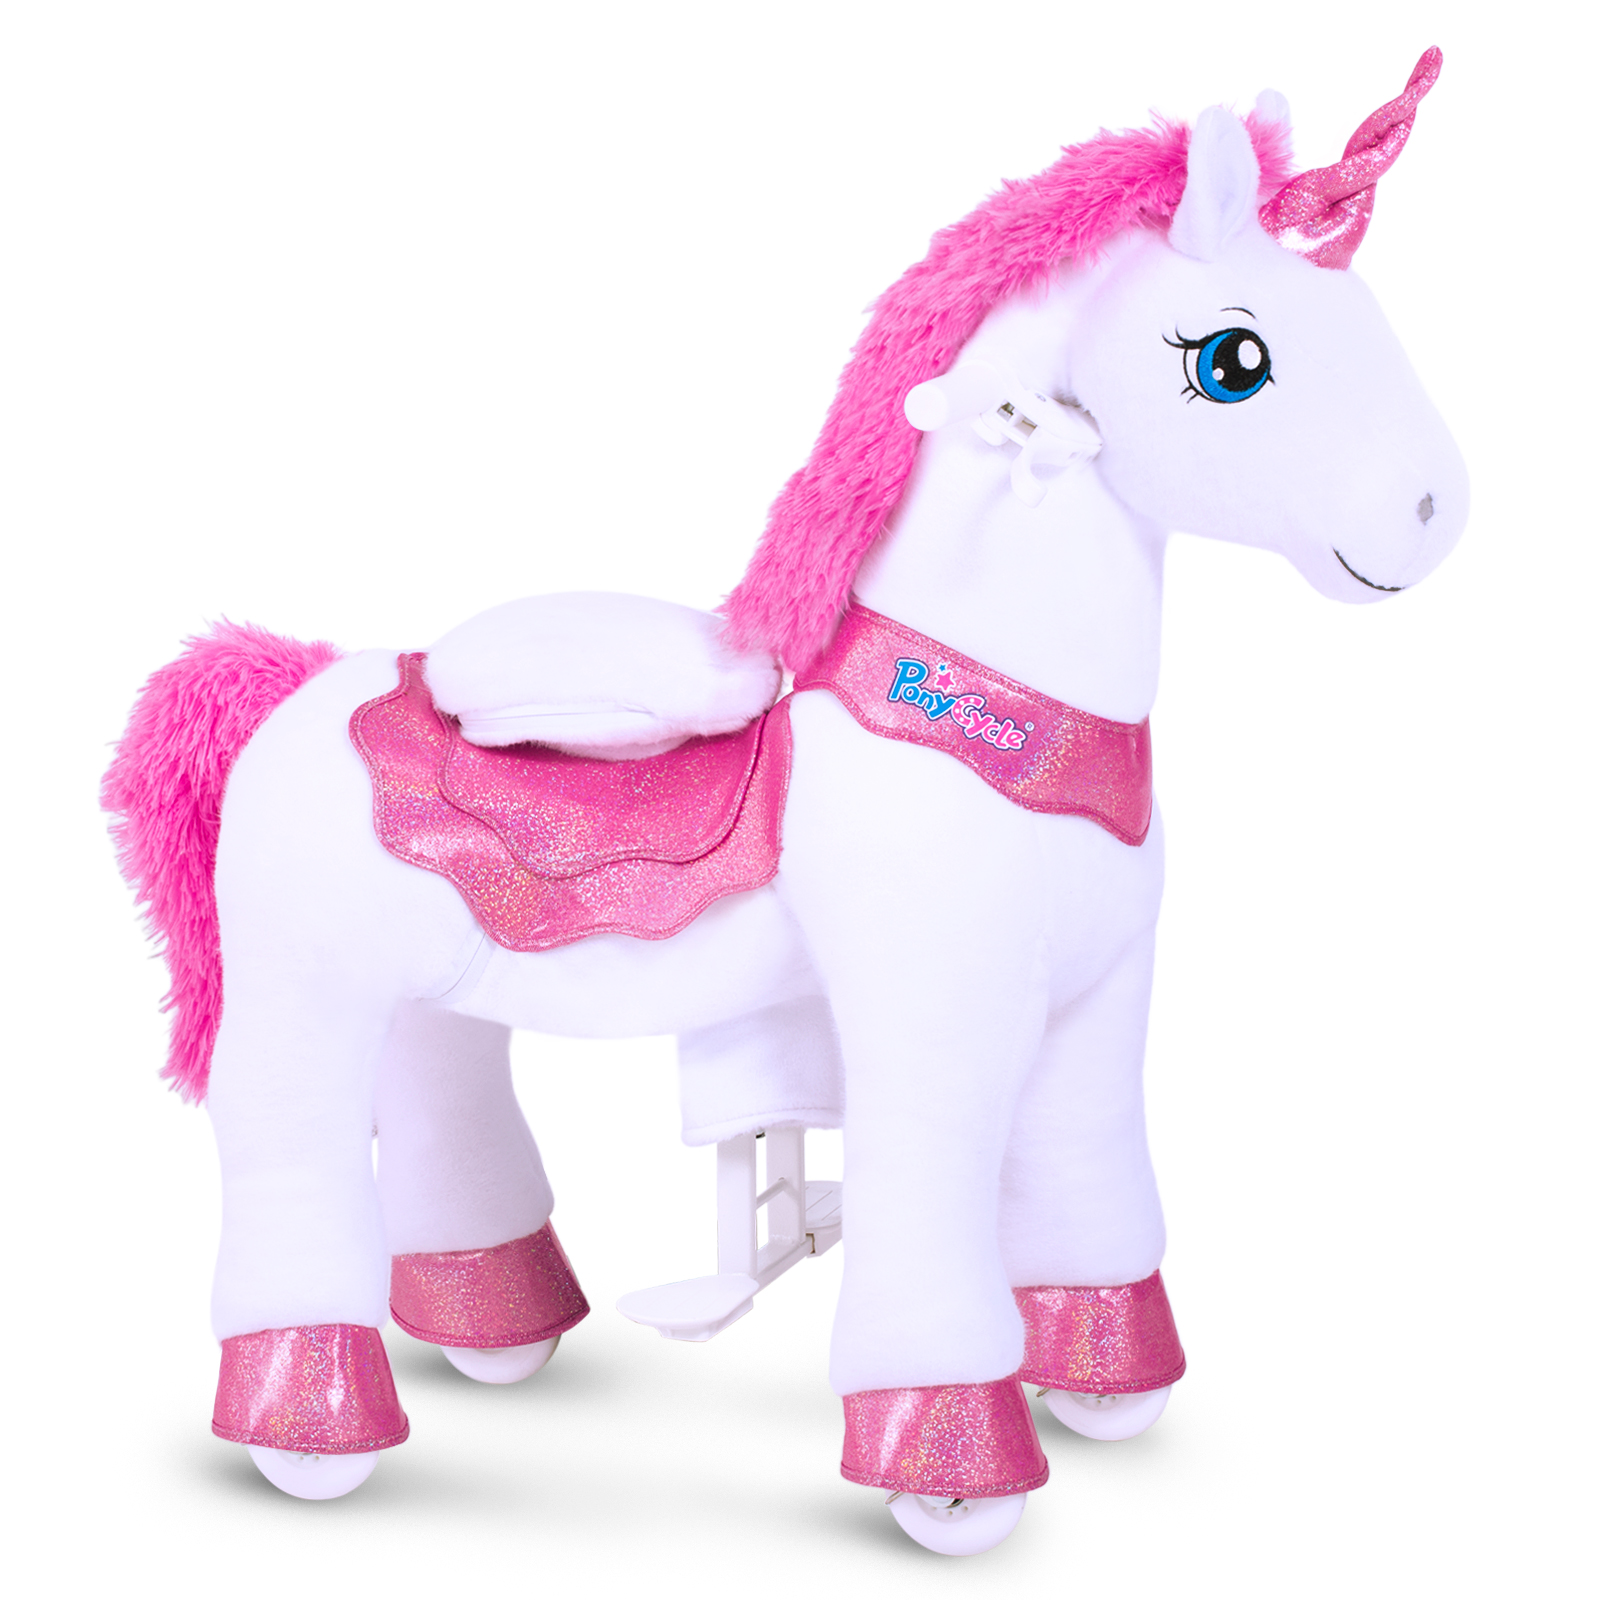 Ride on Unicorn Toy - Model E